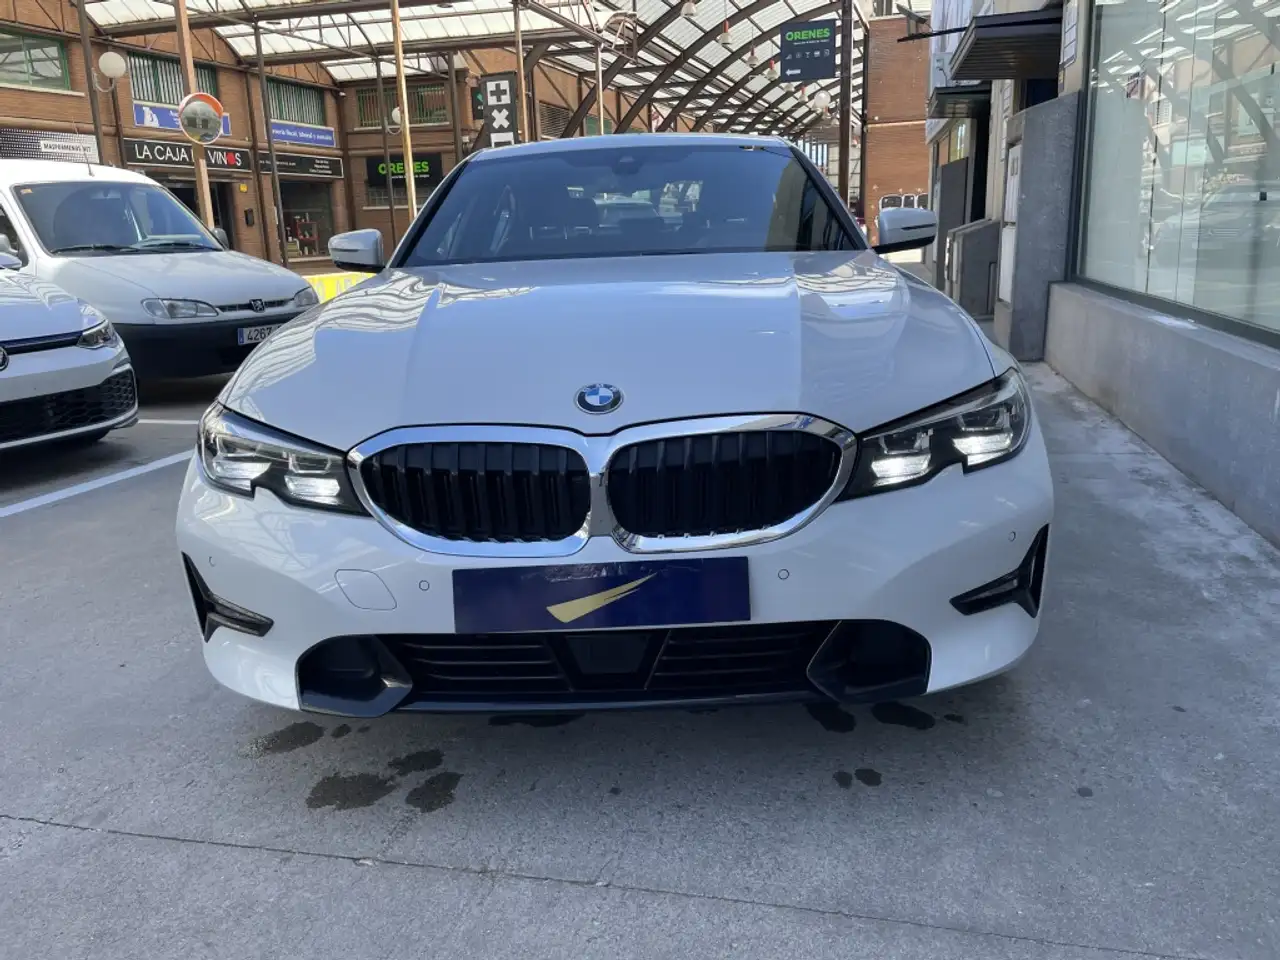 BMW 330 Berline in Wit tweedehands in COLLADO VILLALBA. voor € 32.800,-